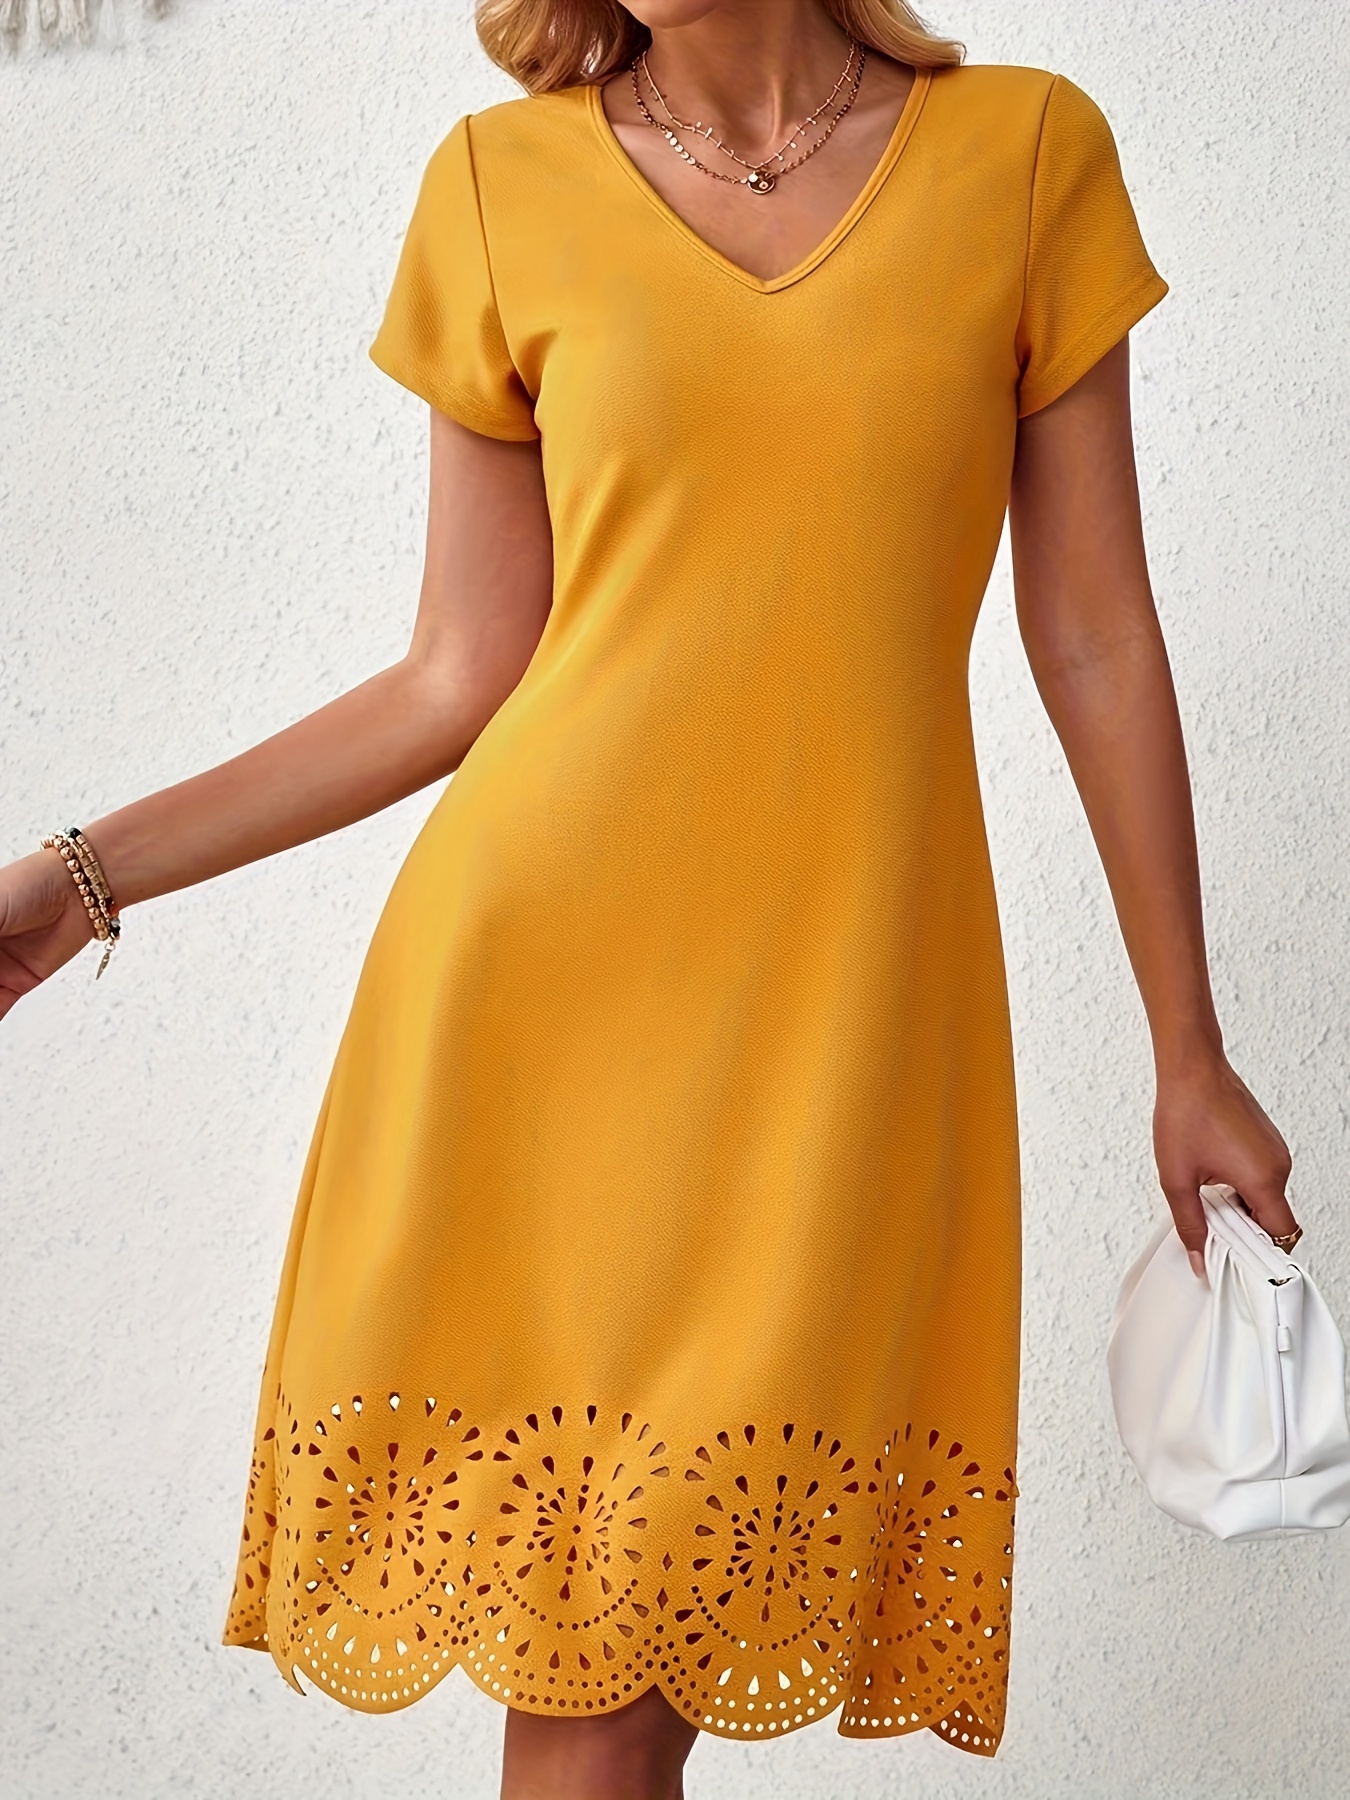 solid color v neck dress elegant short sleeve dress for spring summer womens clothing